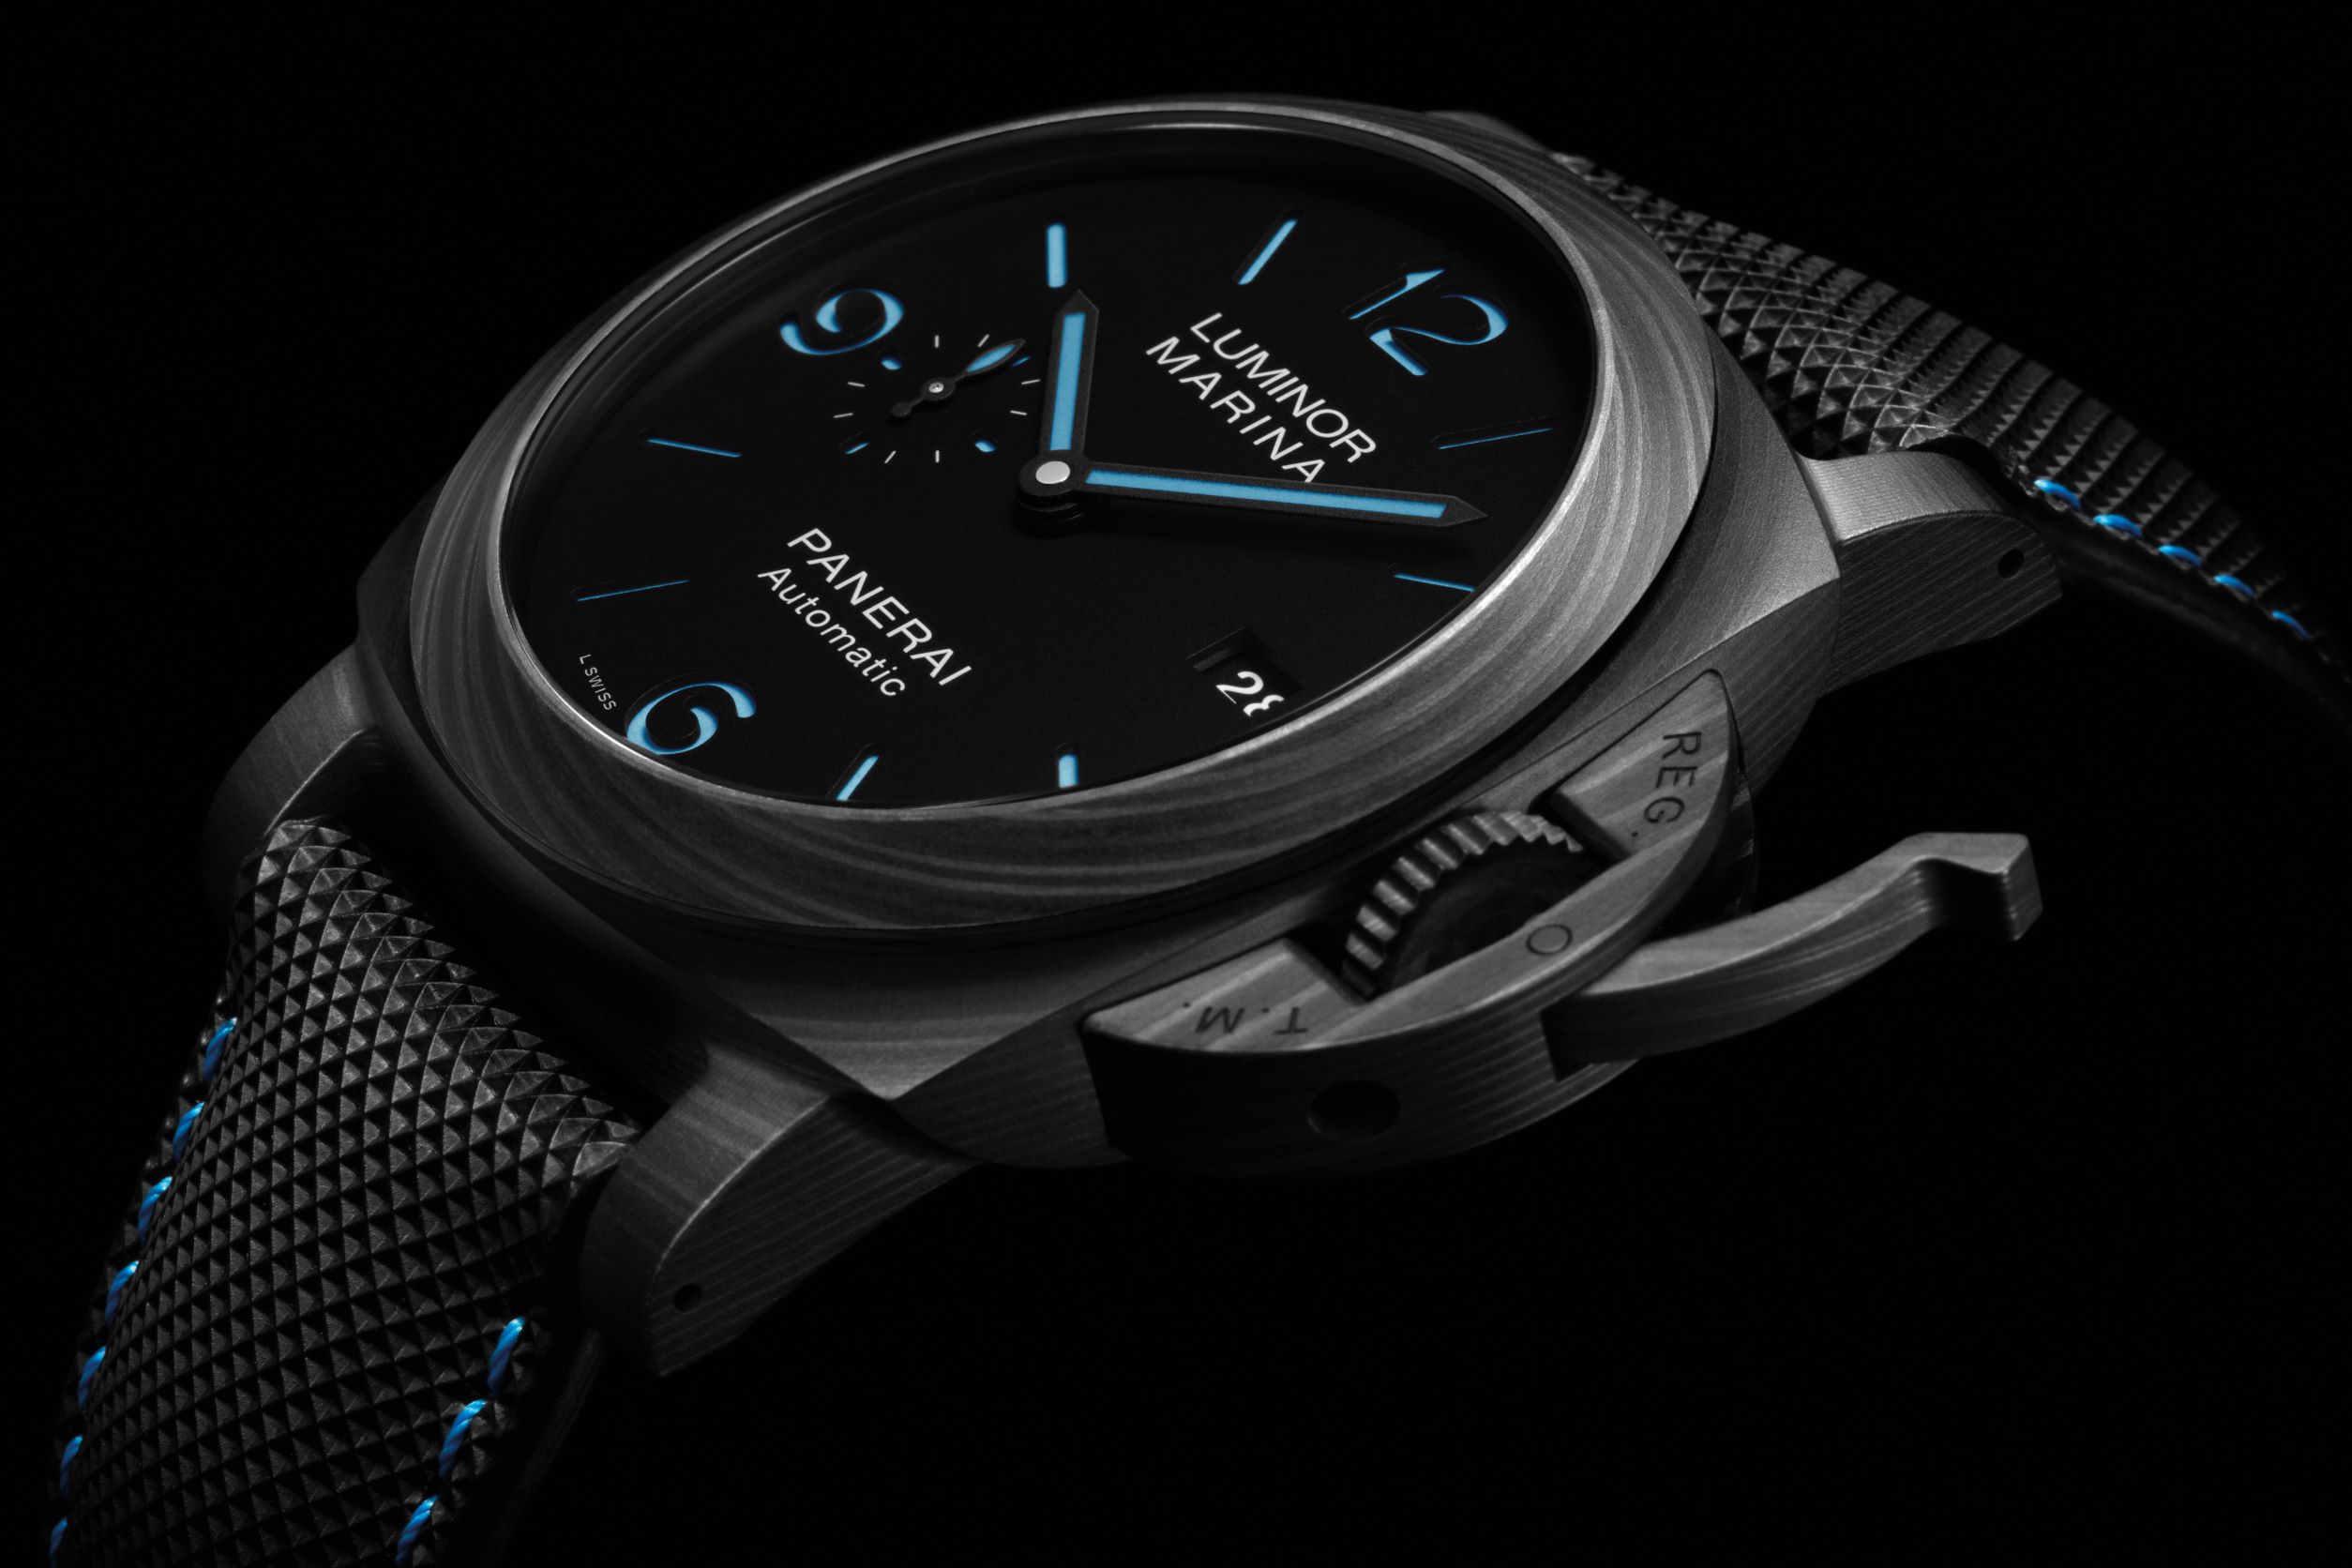 搭配 PAMCAST 線上內容，沛納海在官網亦推出推薦腕錶，Jean-Marc 自己現在最愛配戴的 Luminor Marina Carbotech™ 碳纖維腕錶（PAM01661）也是其中之一。在暗色系錶身上顯得特別明亮的亮藍色時標、指針與縫線，藍色細節和沛納海與大海密不可分的的歷史一系相承。Carbotech™ 也是沛納海近期非常受到市場歡迎的創新材質，讓霸氣大錶戴上手仍有輕盈自如的手感。